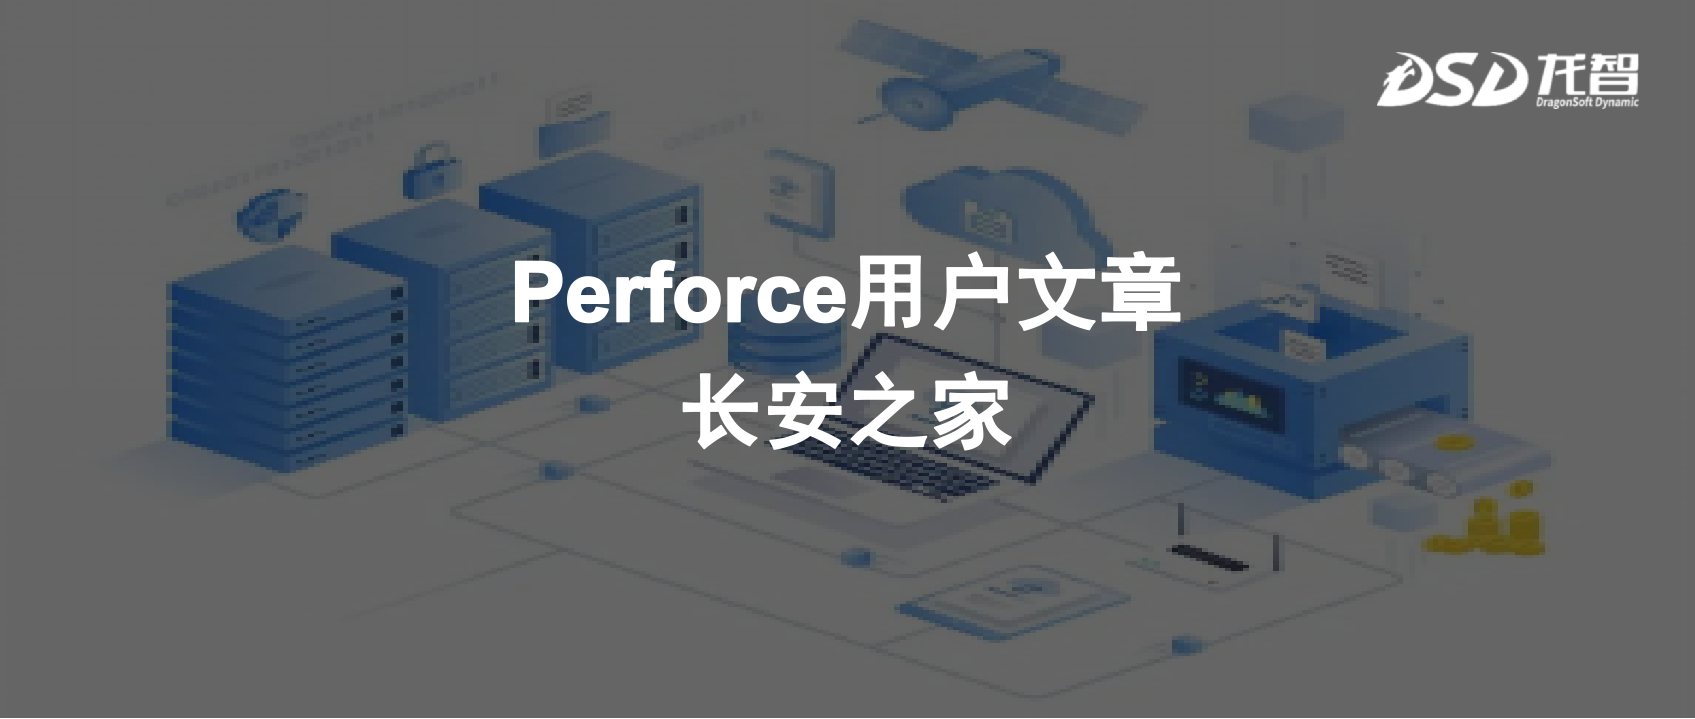 大数据中心通过Perforce软件版本管理系统助力动力系统开发